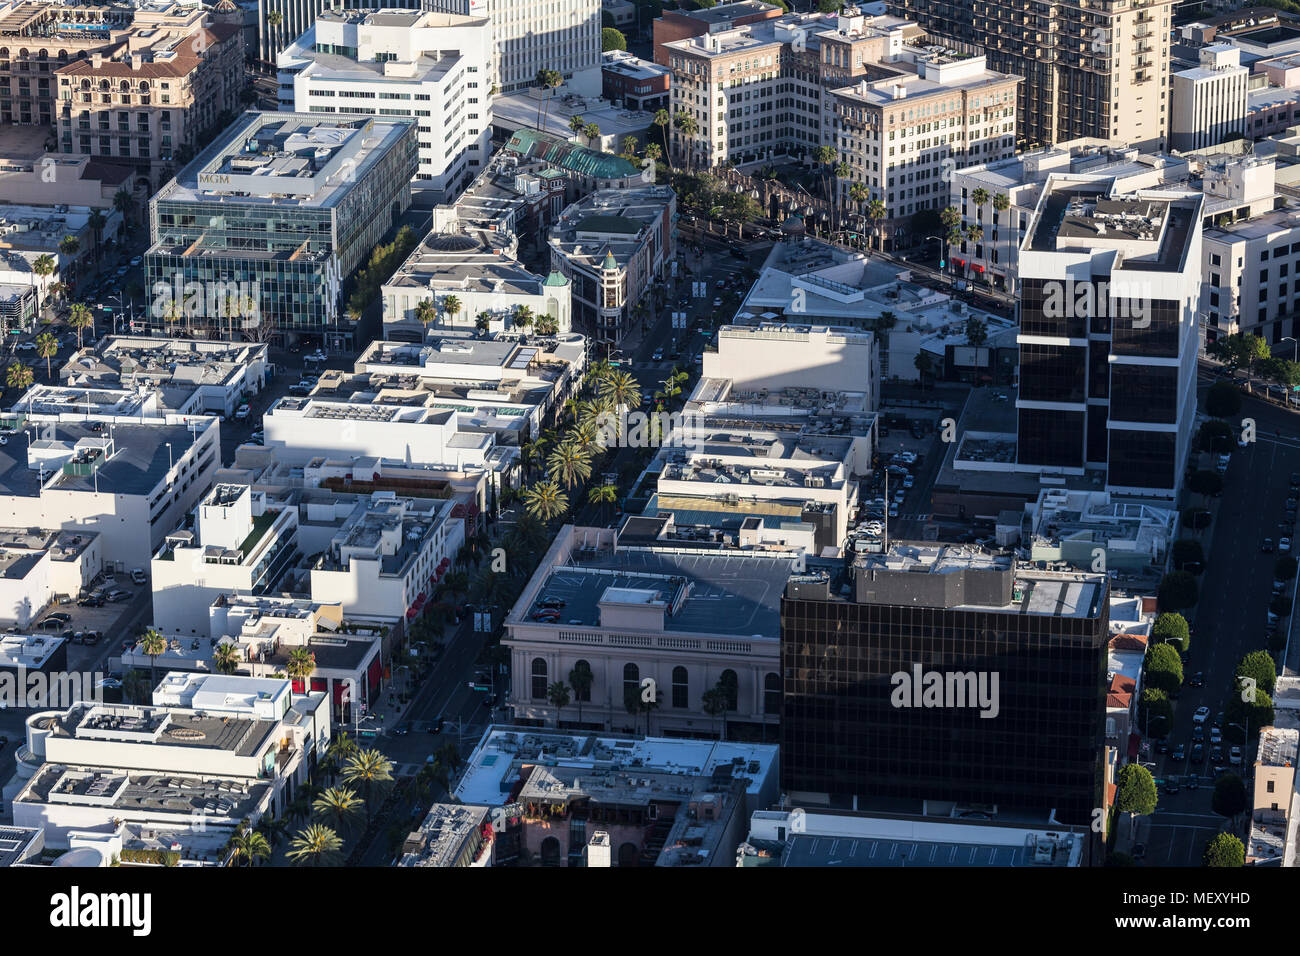 Beverly Hills, Kalifornien, USA - 18. April 2018: Nachmittag Luftaufnahme des berühmten Rodeo Drive Shopping Viertel in der Nähe des Wilshire Blvd. Stockfoto